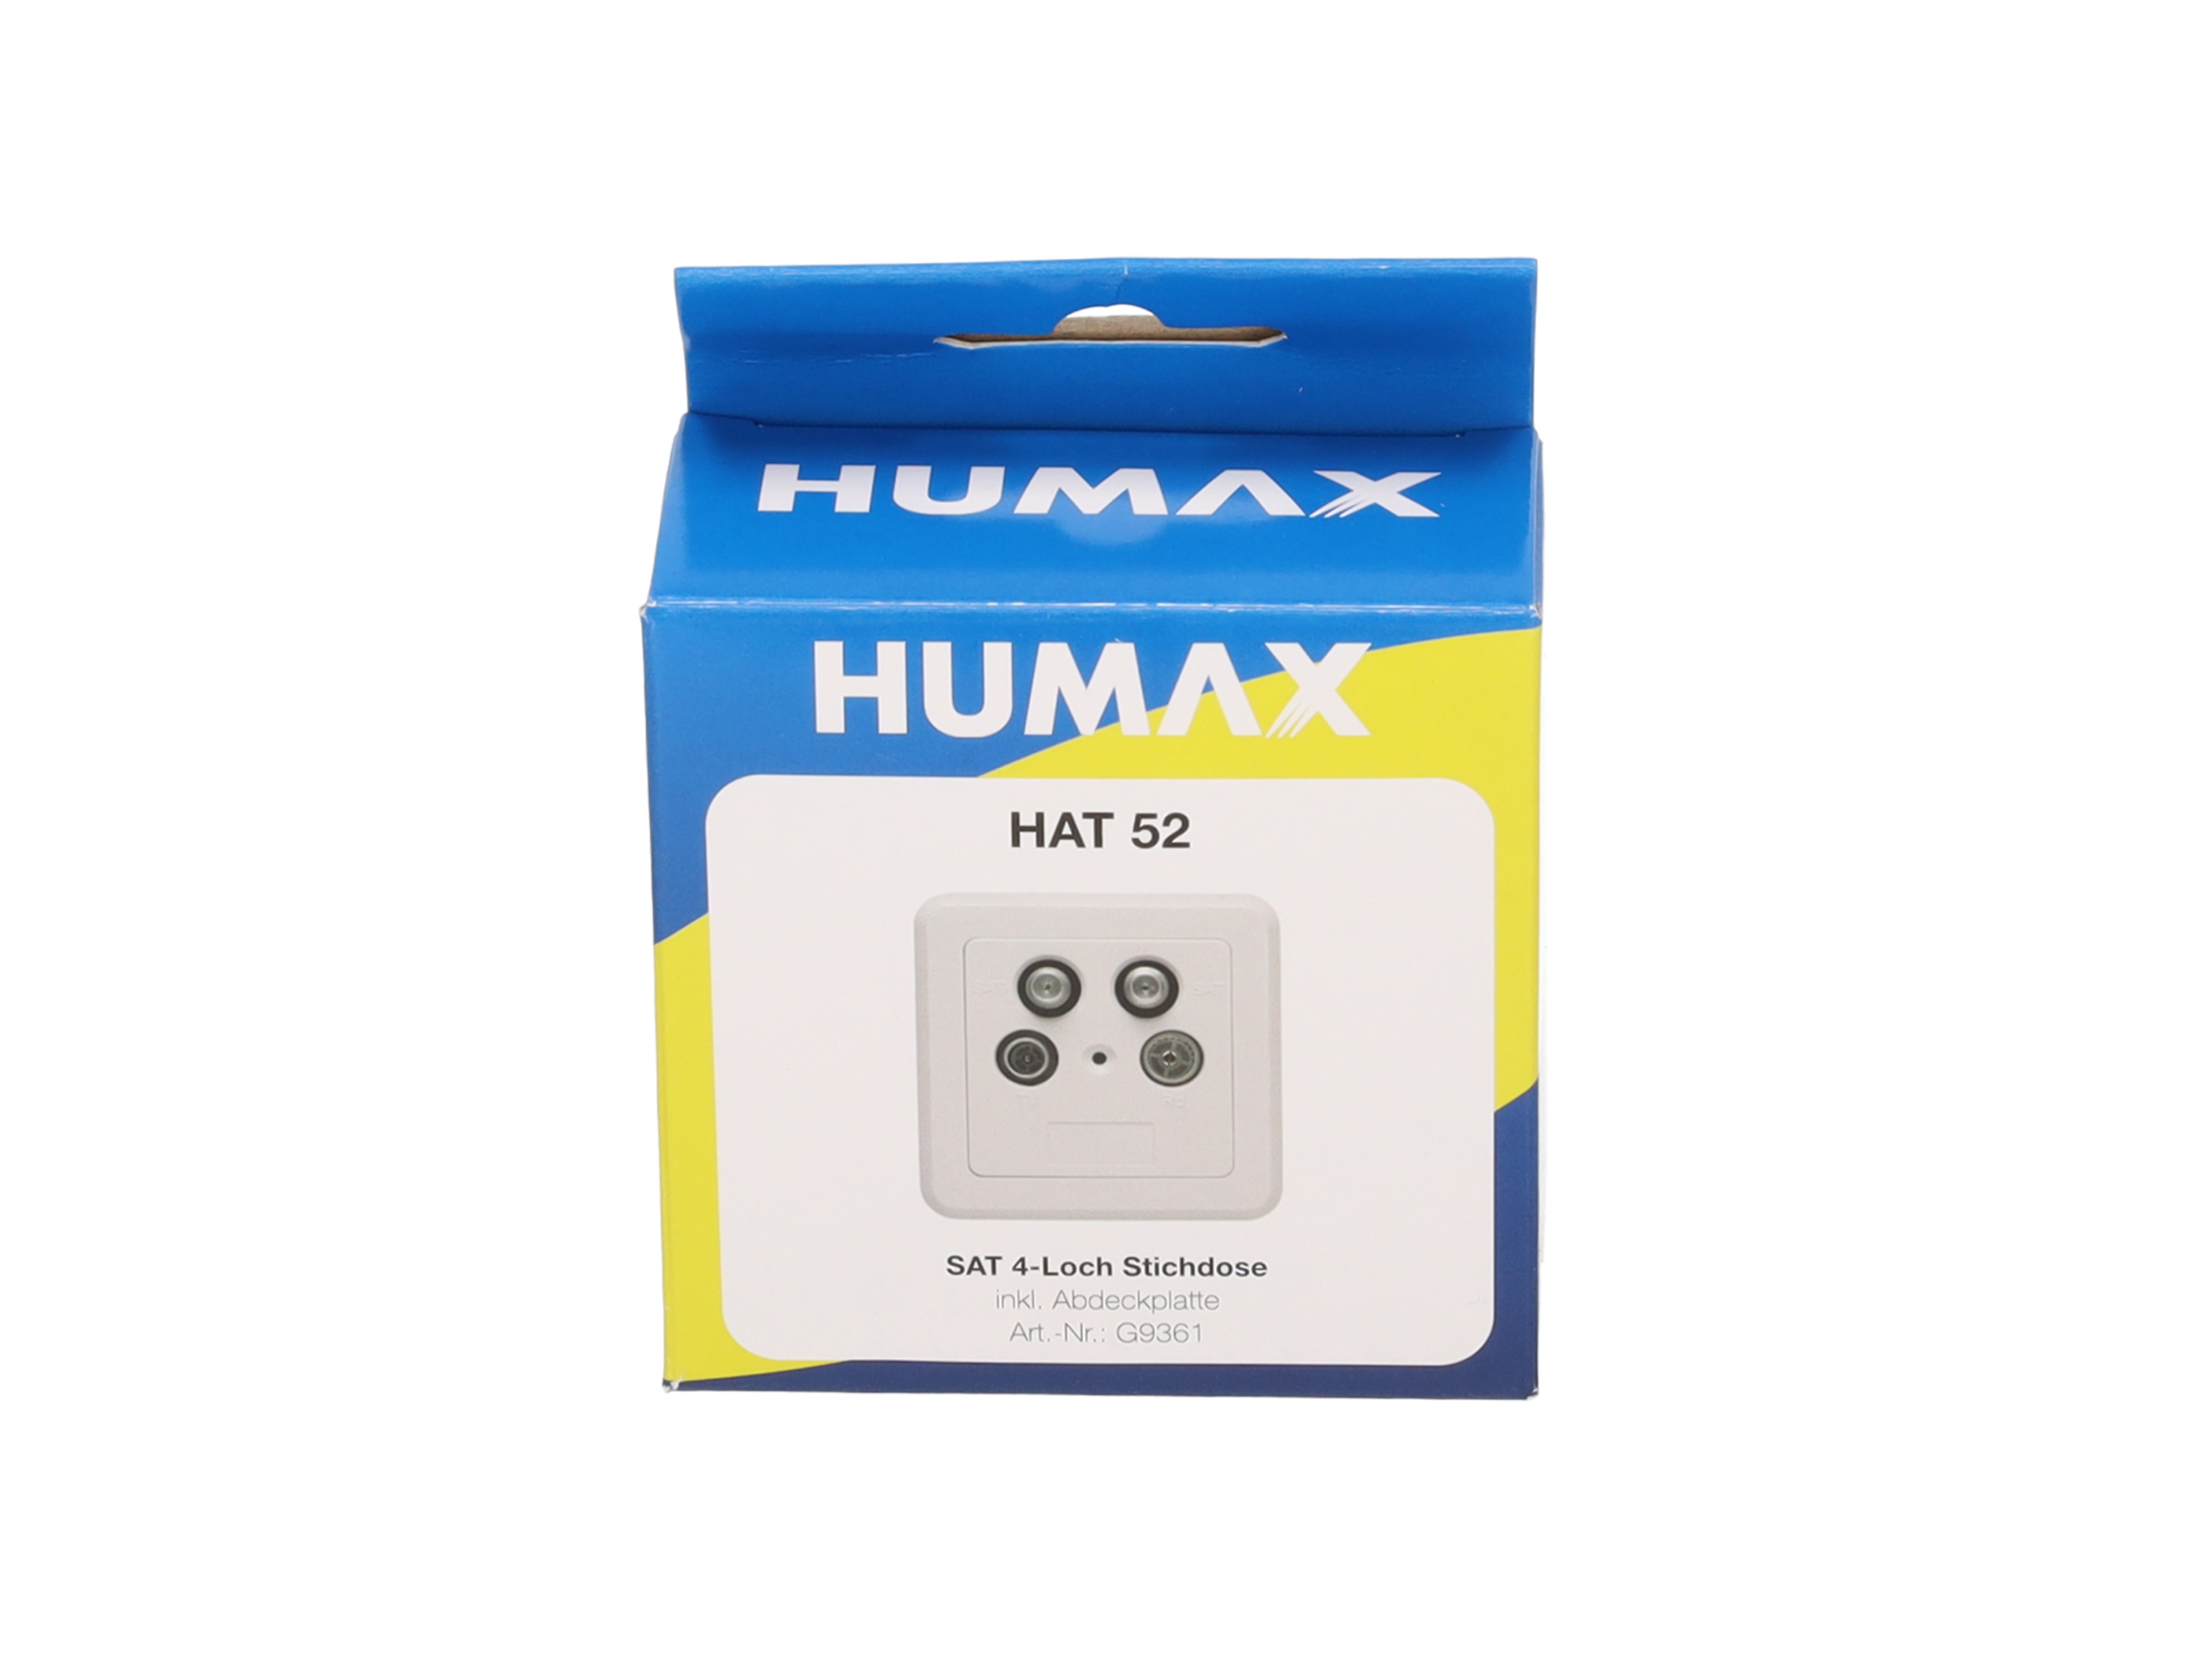 HUMAX 52 4-Loch HAT Antennenenddose mit Abdeckung